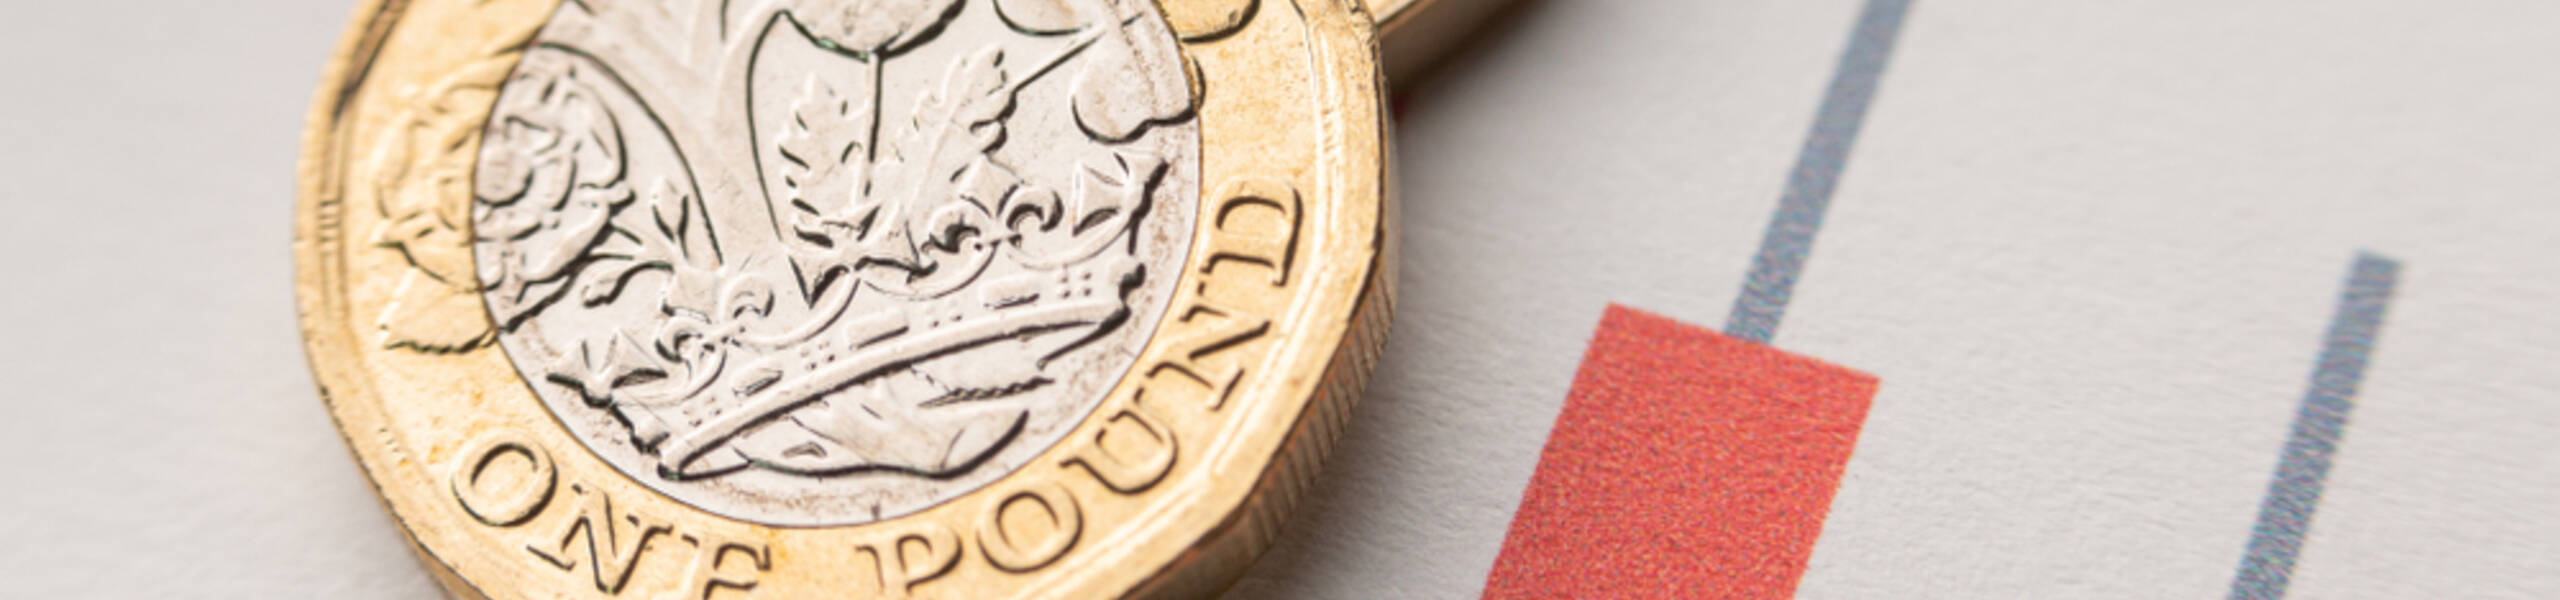 La libra esterlina (GBP) podría debilitarse aún más después del informe del PIB del Reino Unido